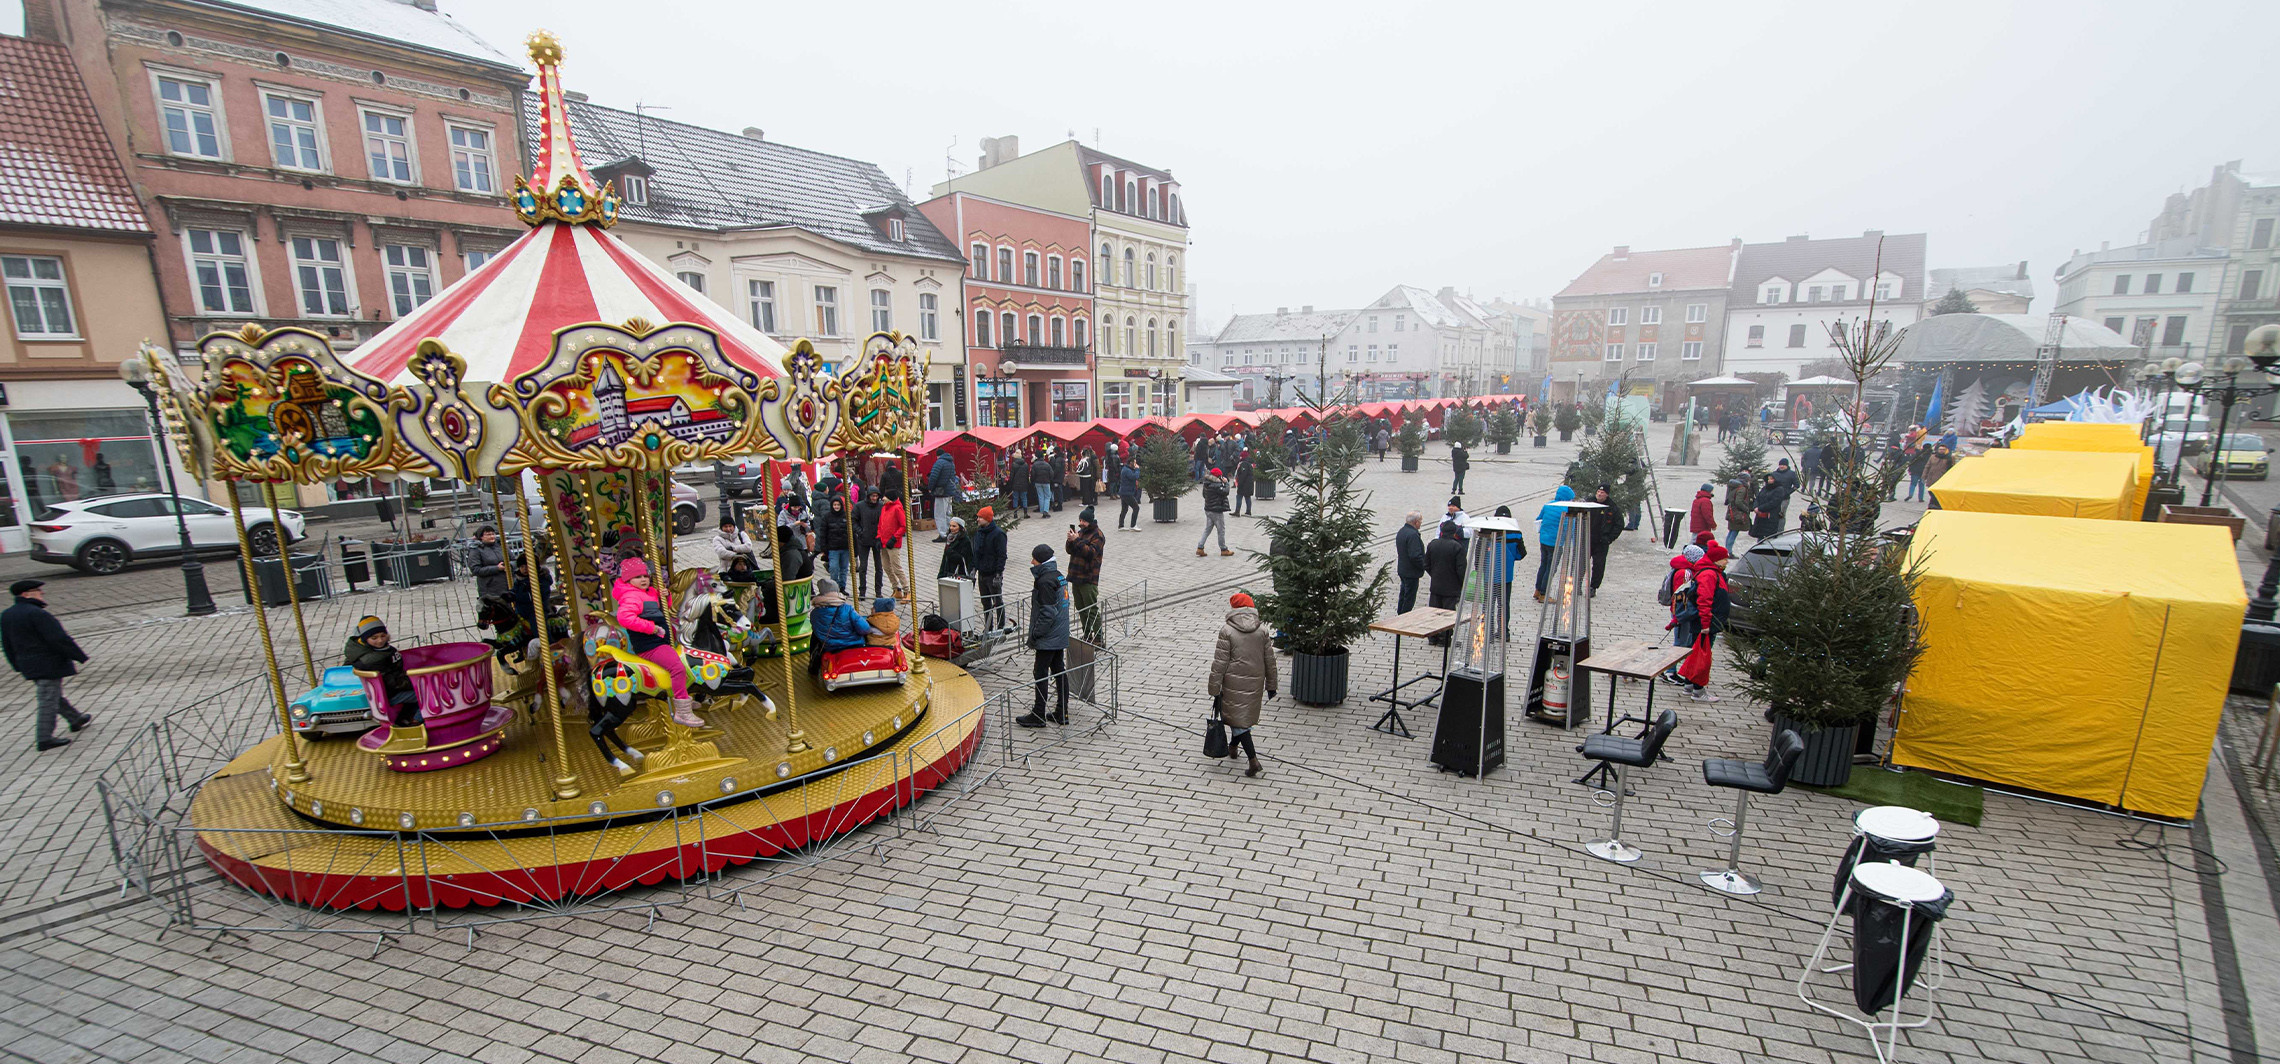 Inowrocław - Na Rynku zorganizowano świąteczny jarmark. Jakie atrakcje?